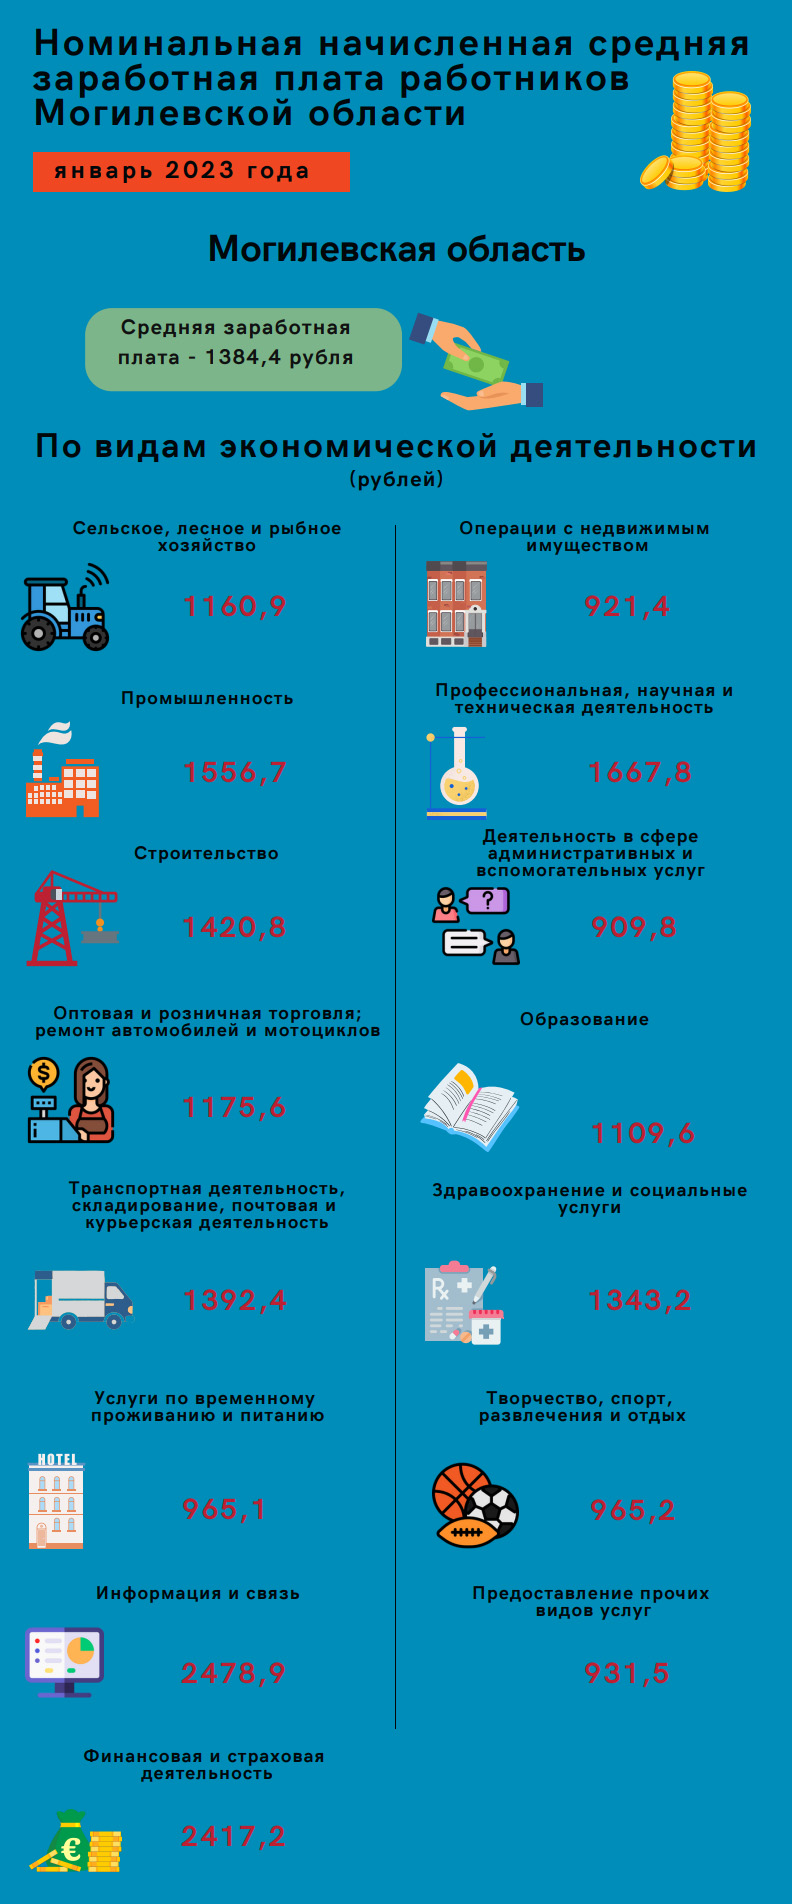 Наглядно о номинальной начисленной средней заработной плате работников Могилевской области, январь 2023 г.